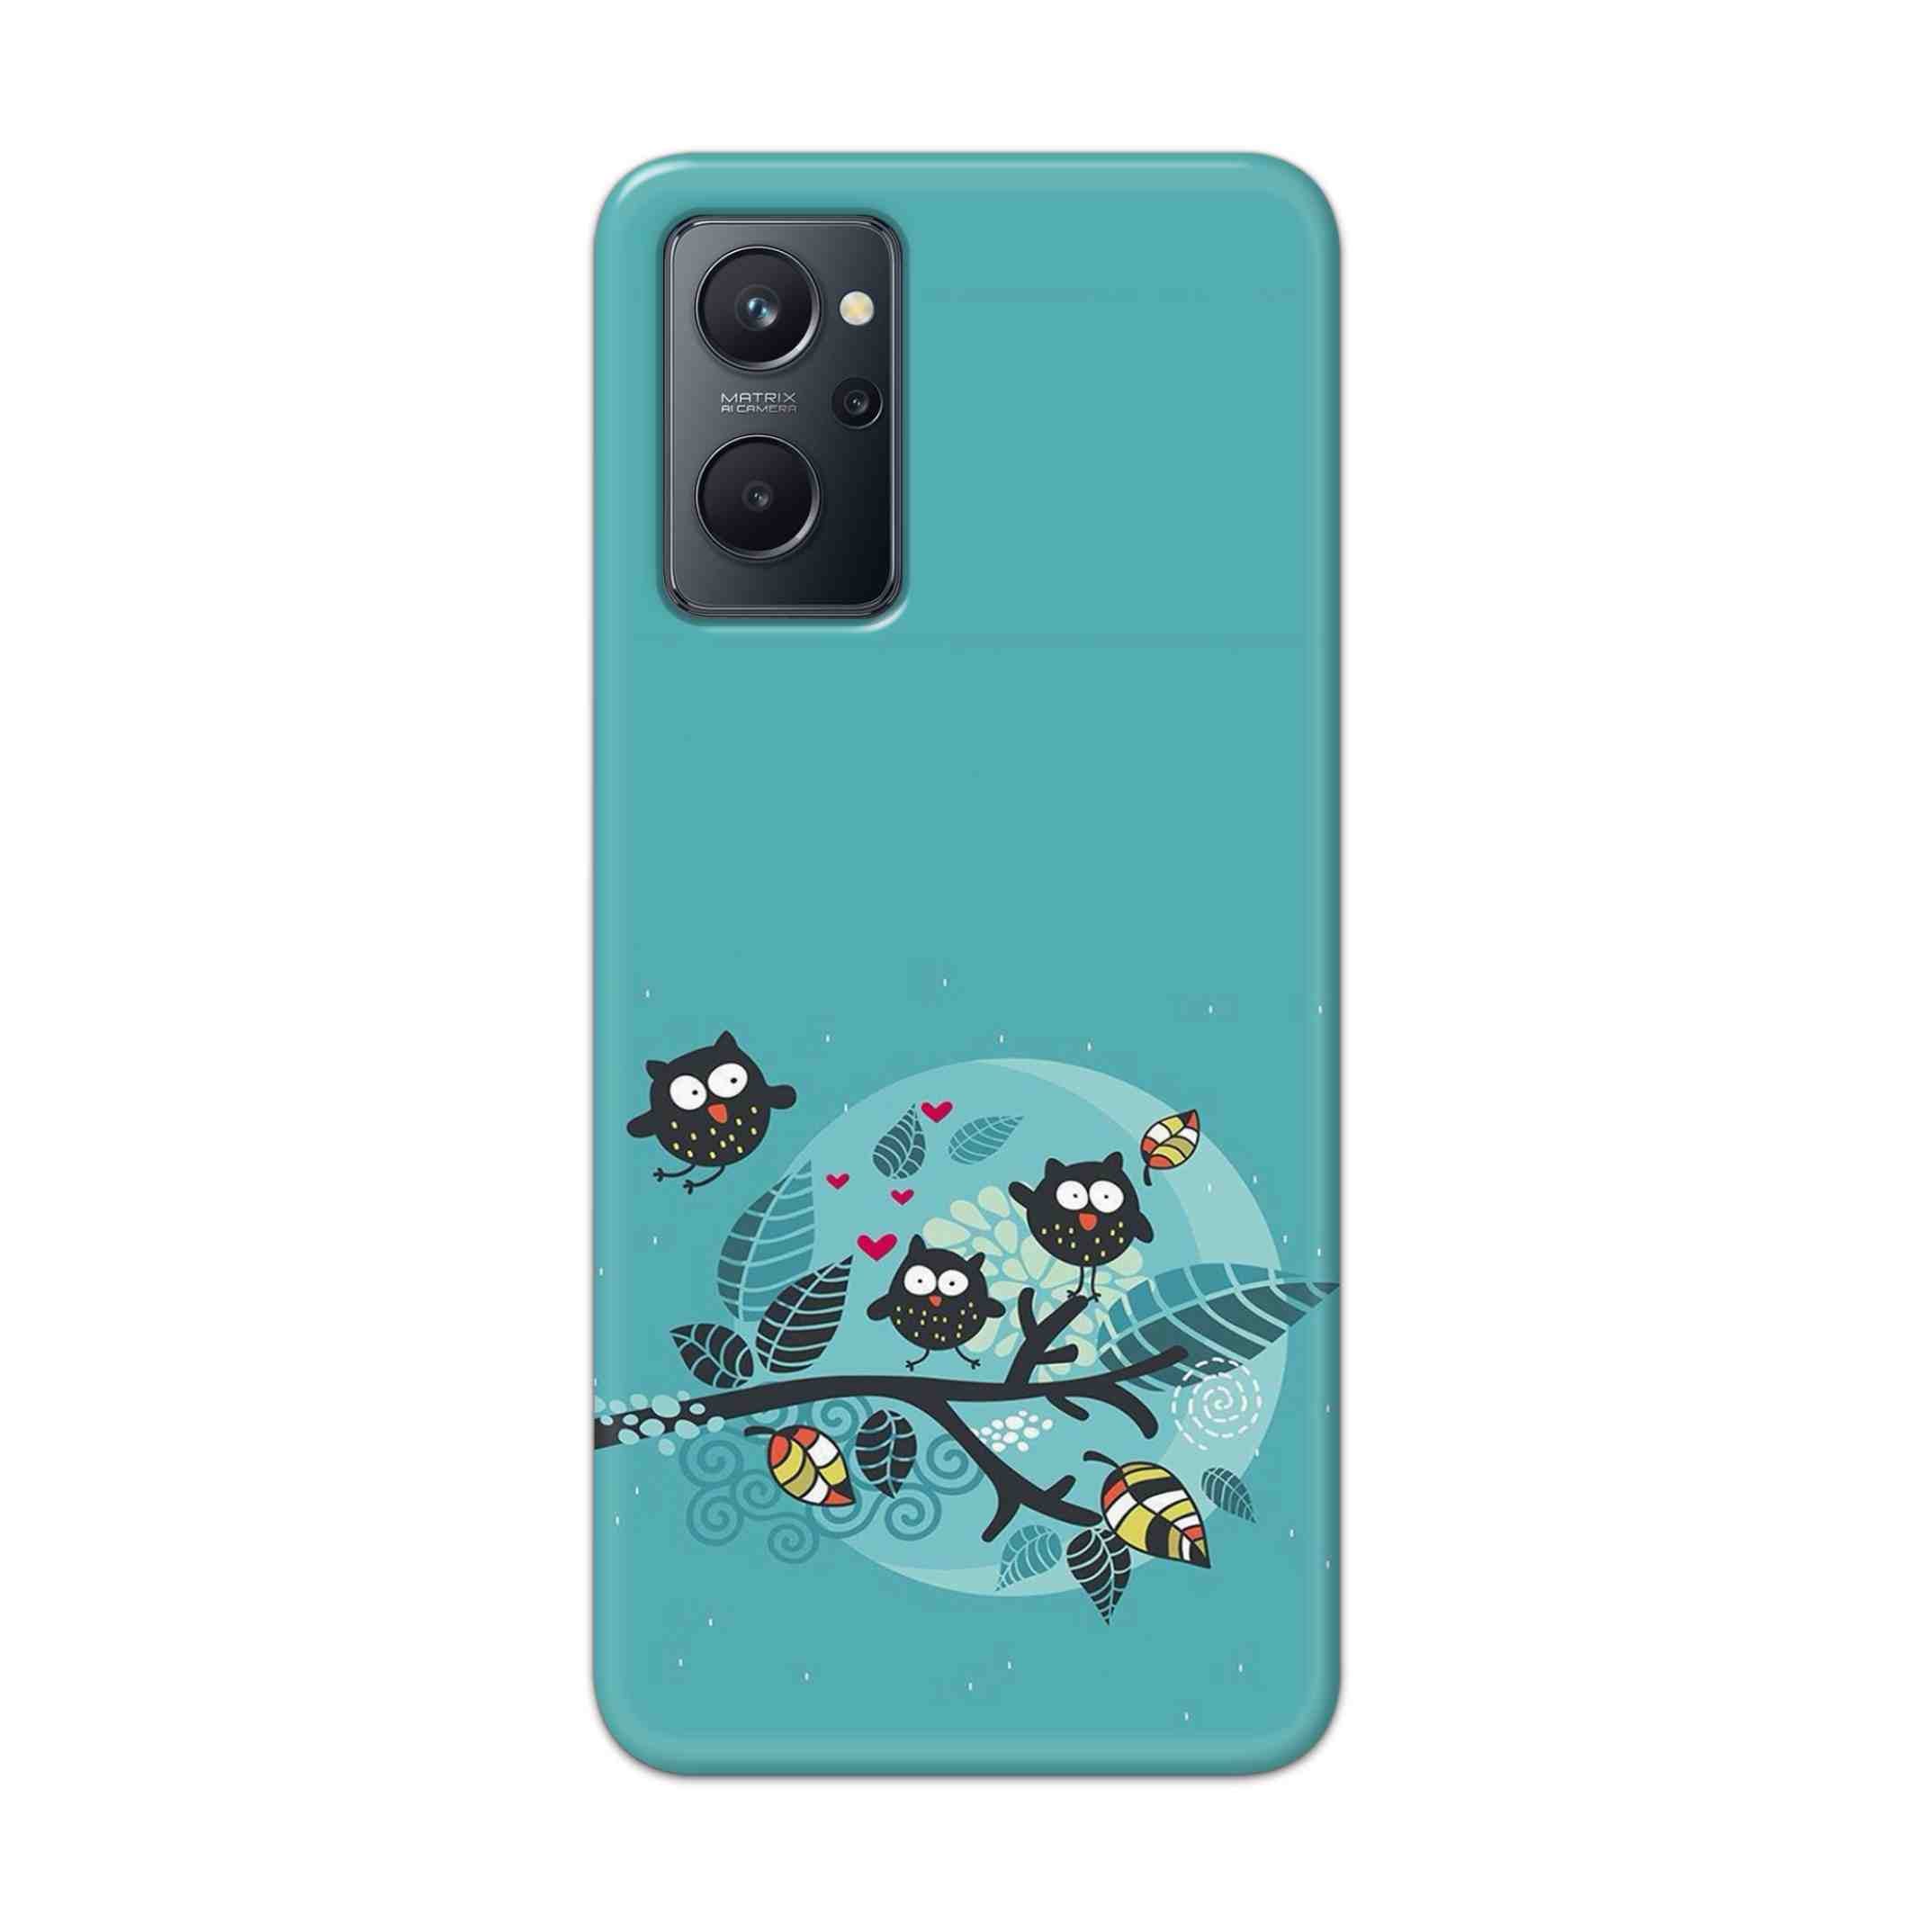 Buy Owl Hard Back Mobile Phone Case Cover For Realme 9i Online